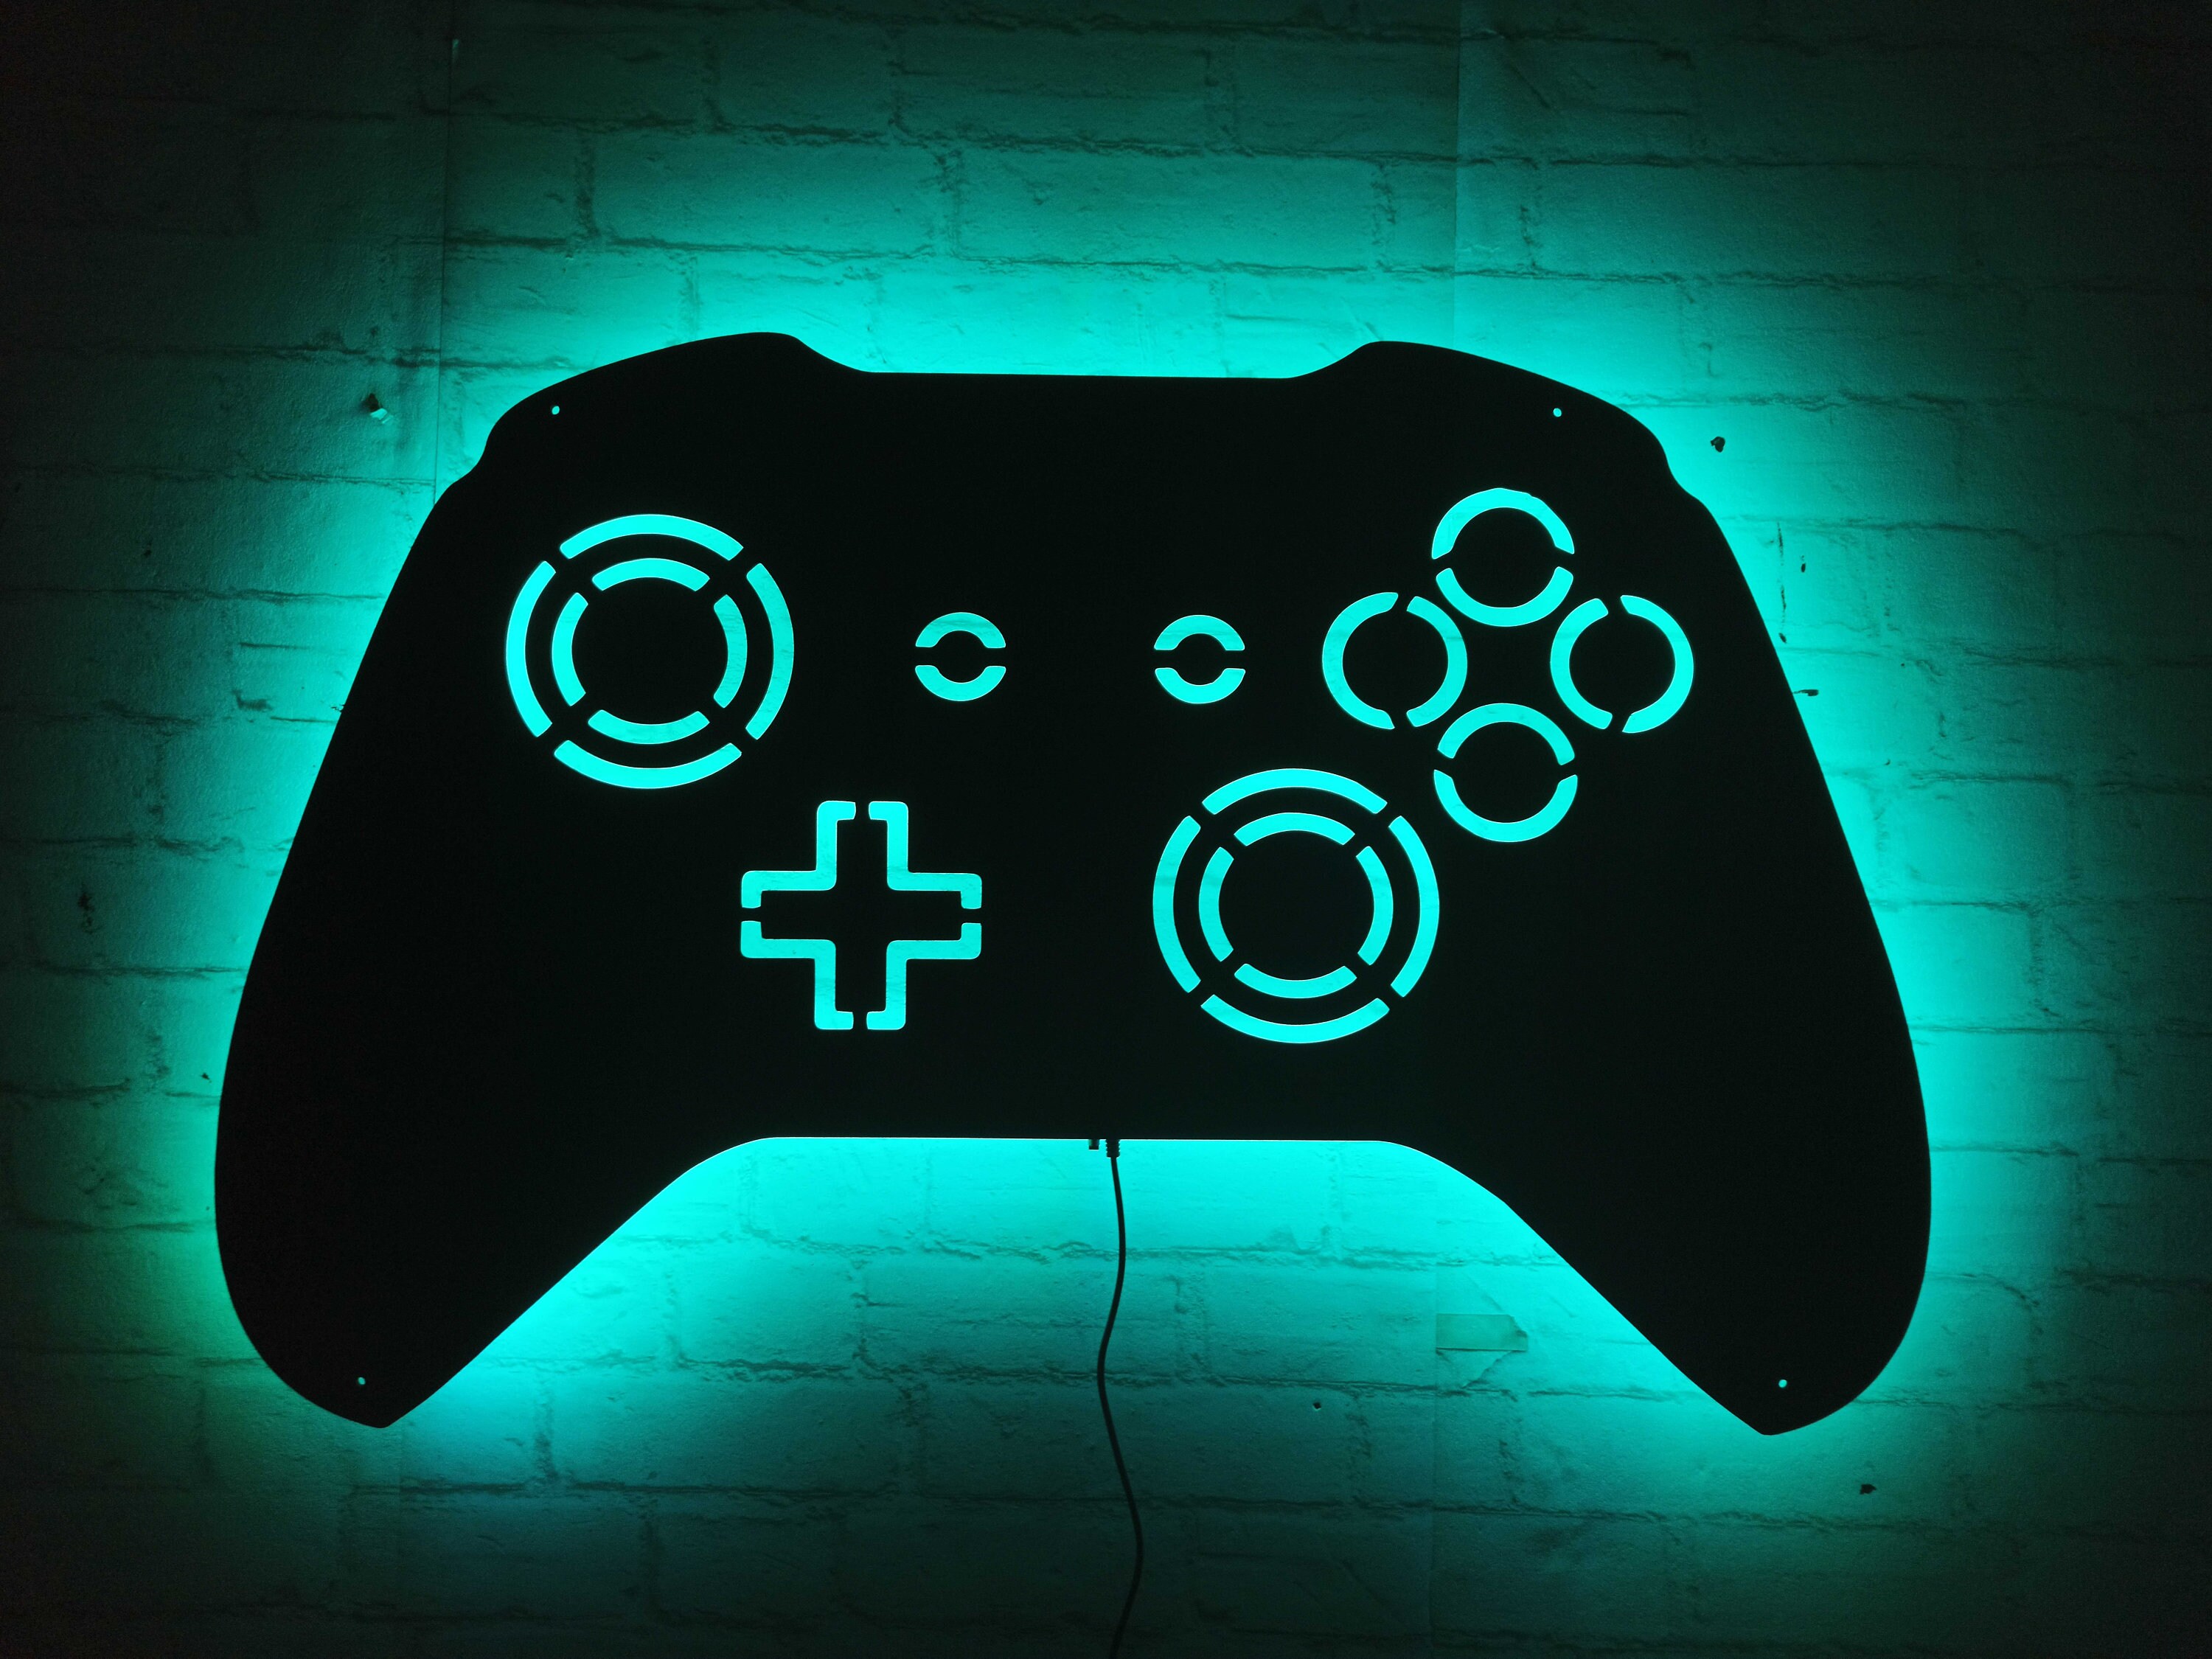 Néon LED Remote Playstation: Illuminez votre espace de jeu